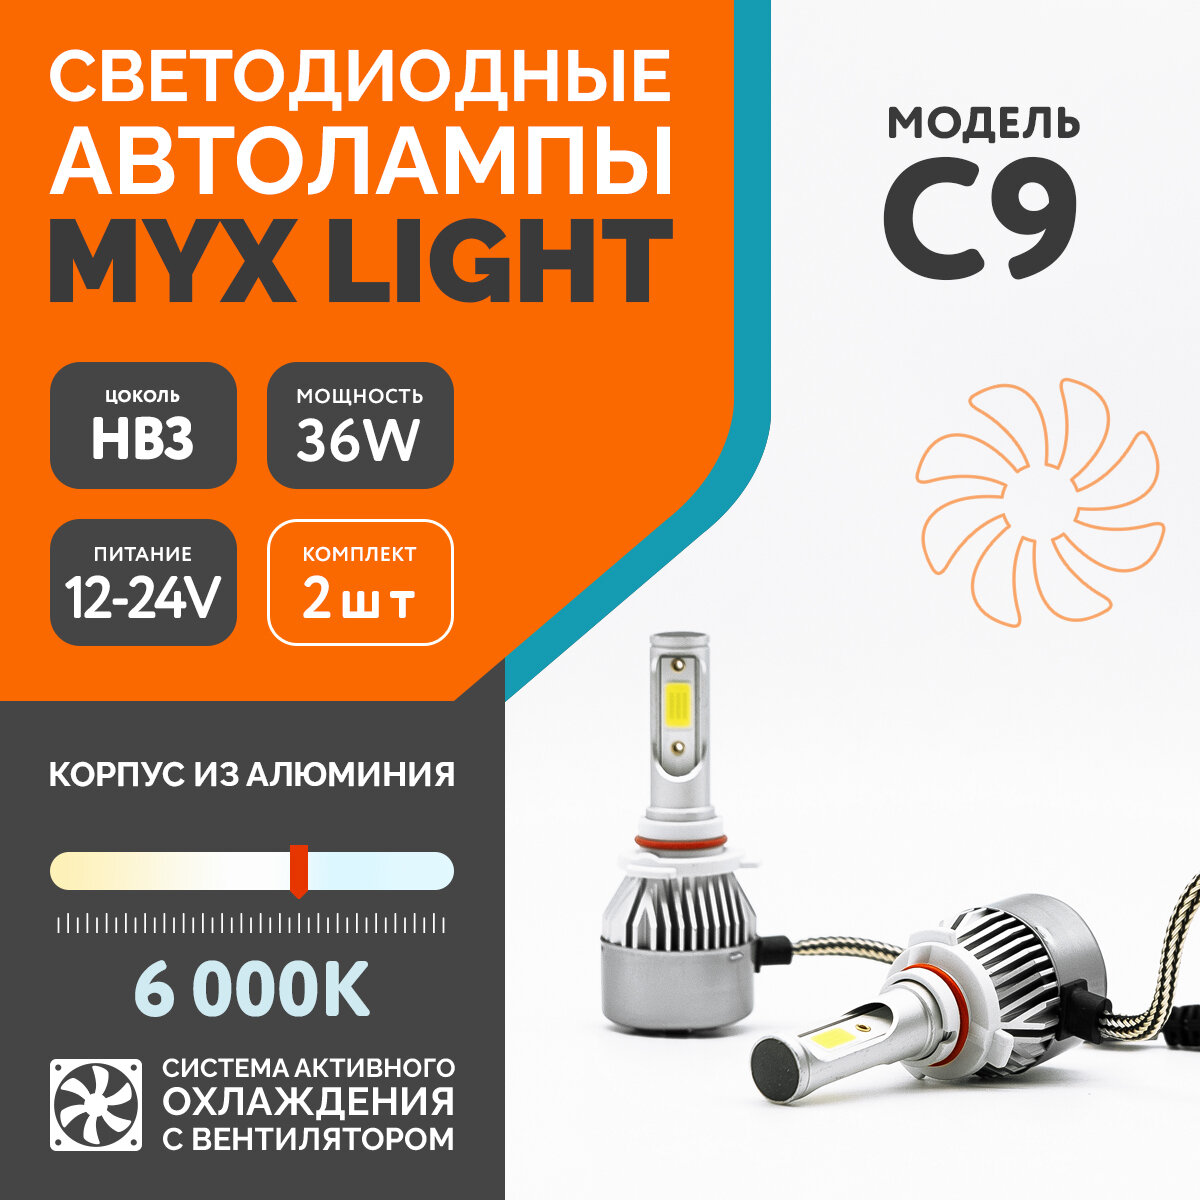 Светодиодные автомобильные лампы MYX Light C9, напряжение 12V, мощность 36W, LED чип COB с вентилятором, температура света 6000K, цоколь HB3, 2 шт.